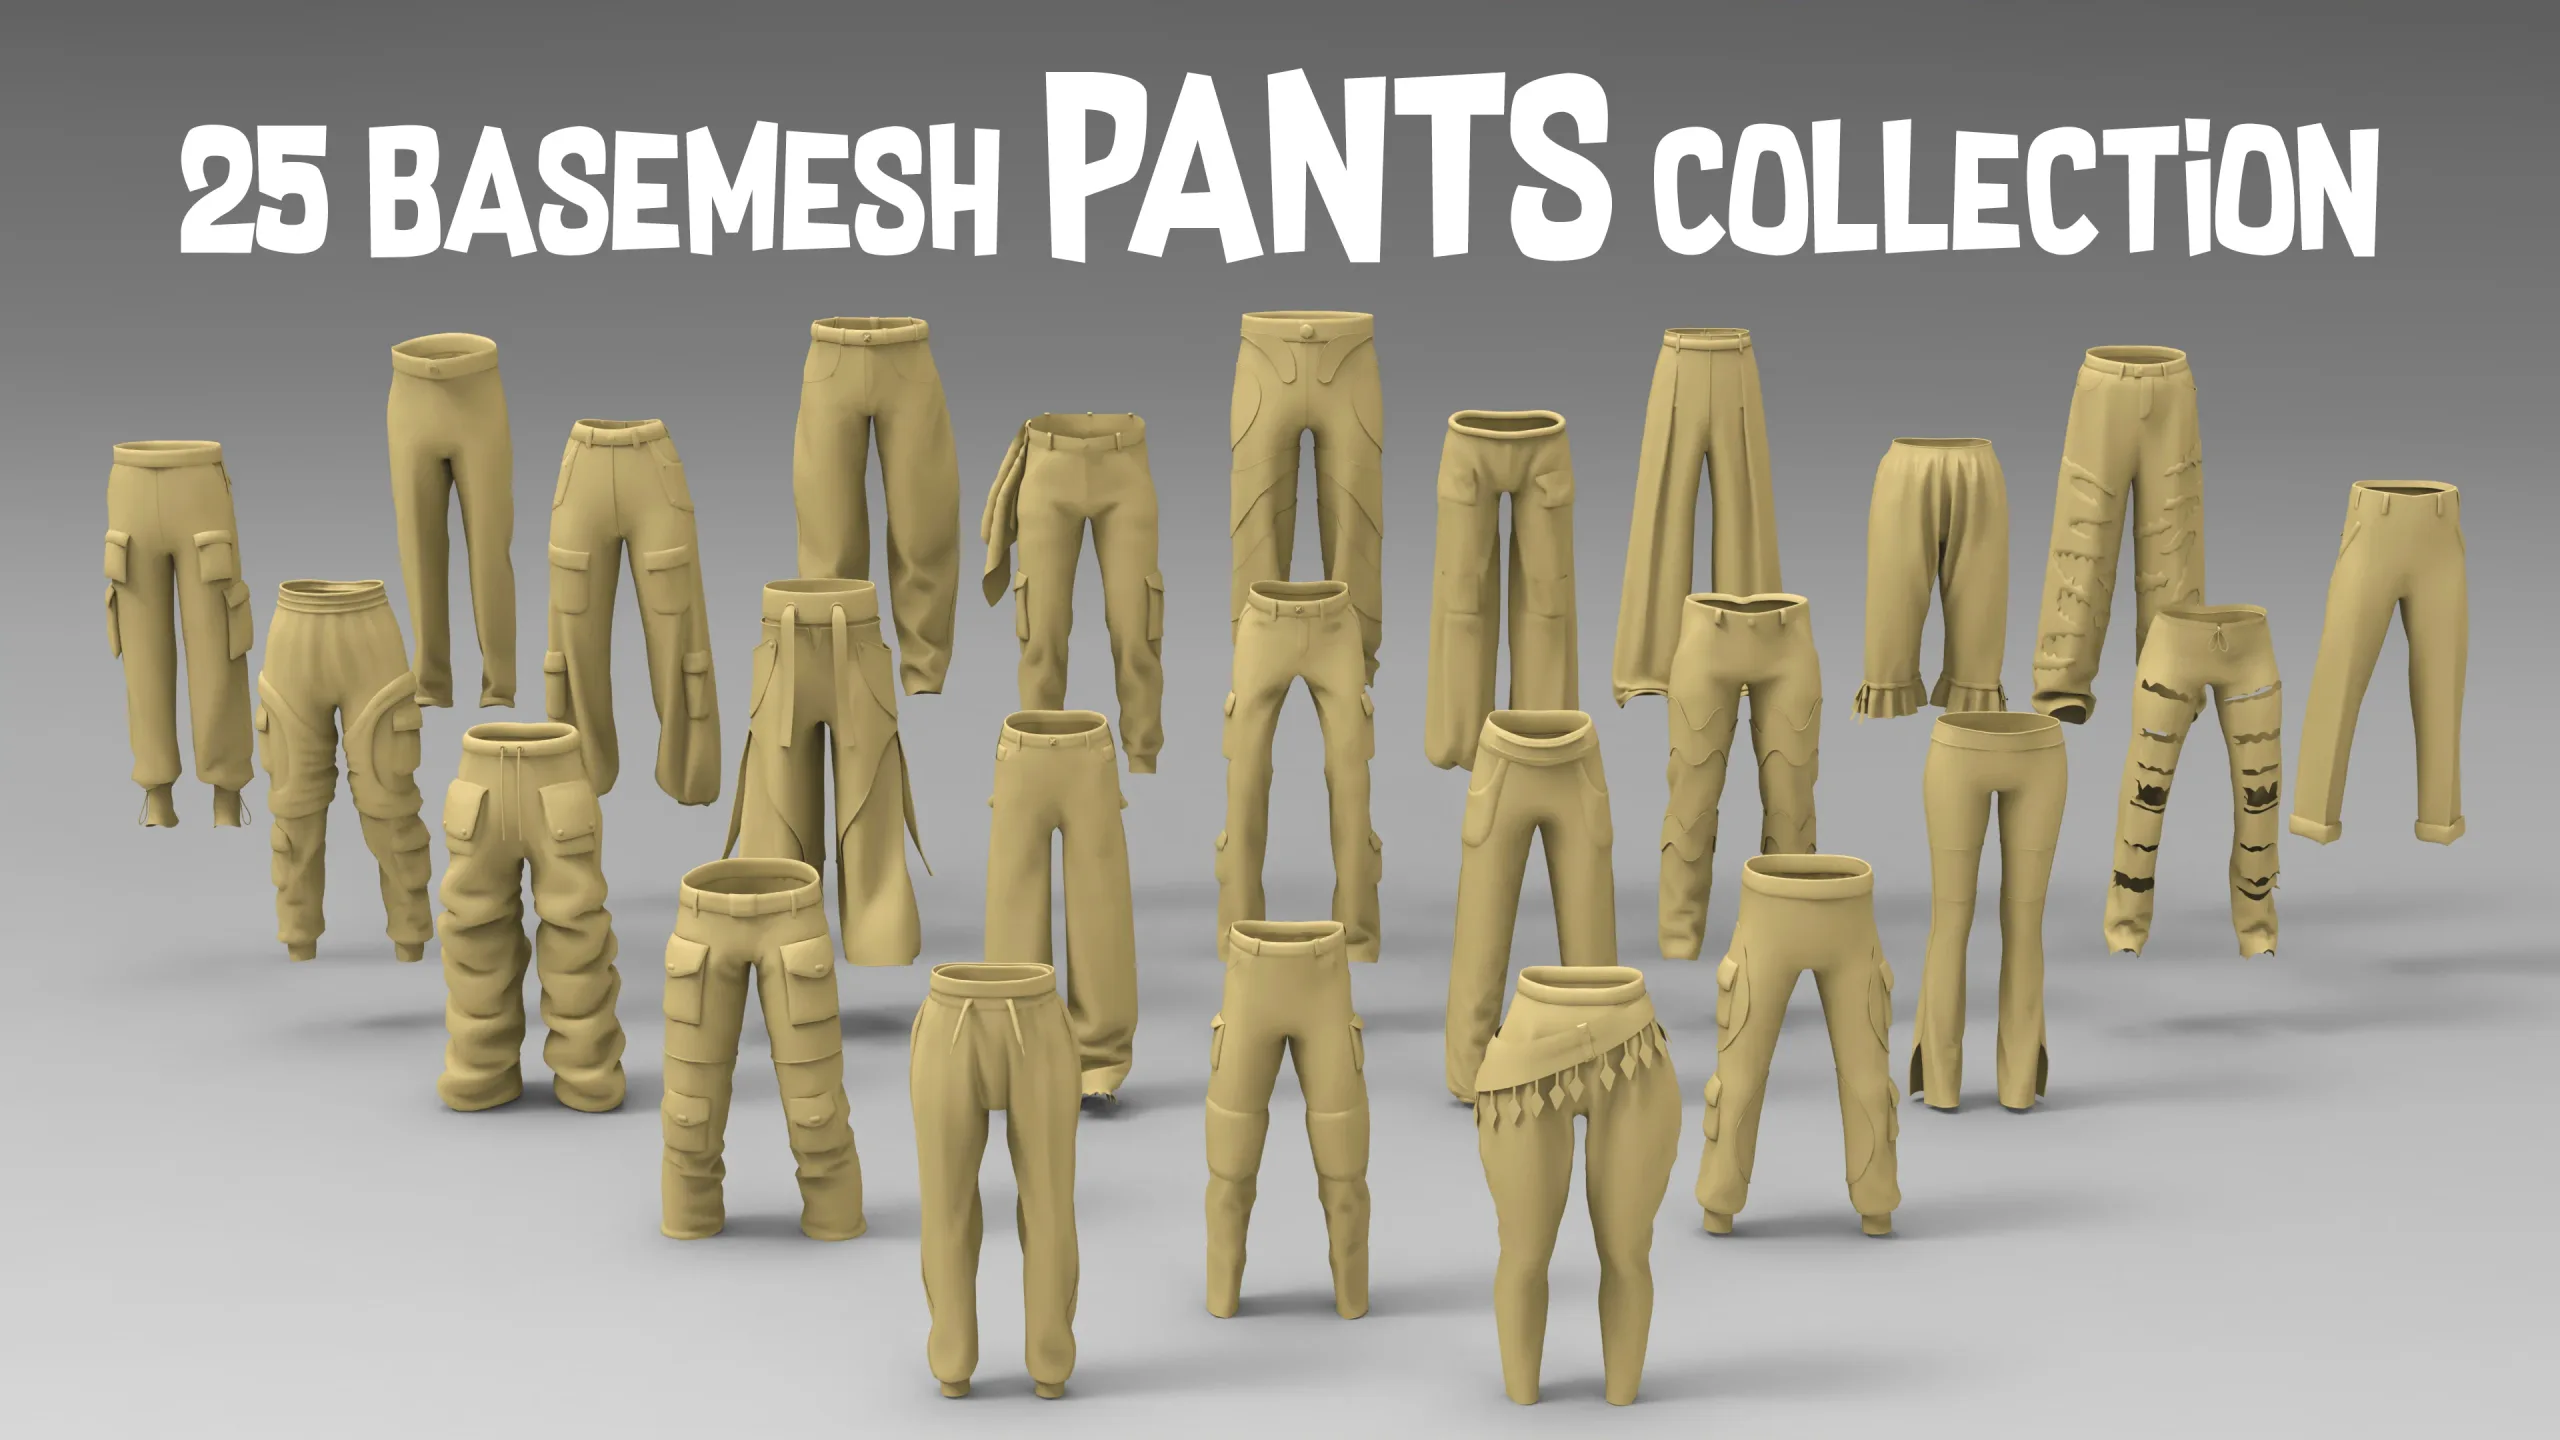 25 basemesh pants collection